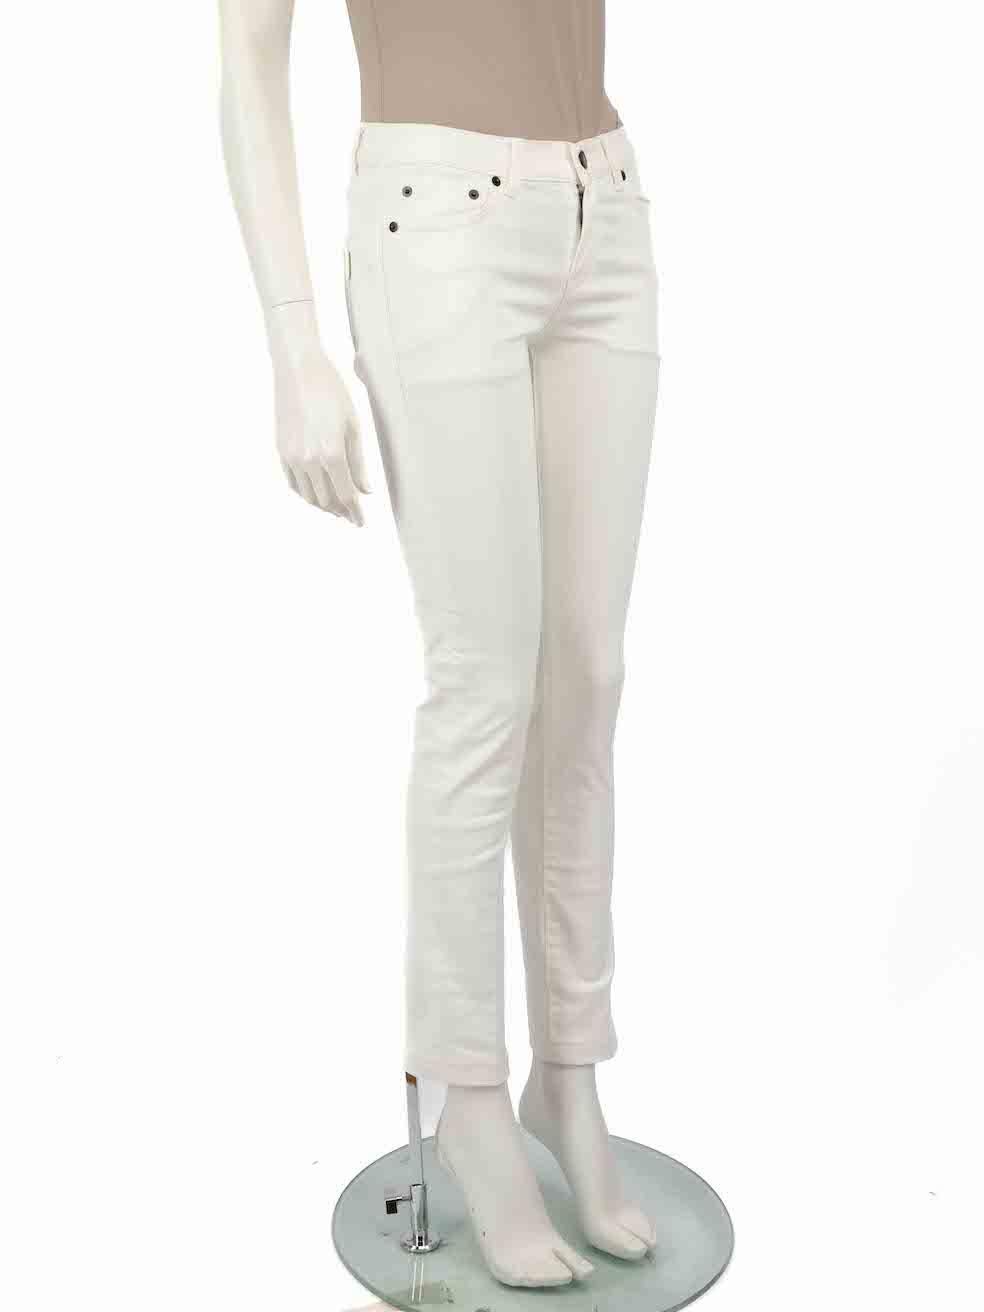 CONDIT ist sehr gut. Kaum sichtbare Abnutzungserscheinungen an der Jeans sind bei diesem gebrauchten Saint Laurent Designer-Wiederverkaufsartikel zu erkennen.
 
 
 
 Einzelheiten
 
 
 Weiß
 
 Denim
 
 Jeans
 
 Skinny fit
 
 Mittlerer Anstieg
 
 3x